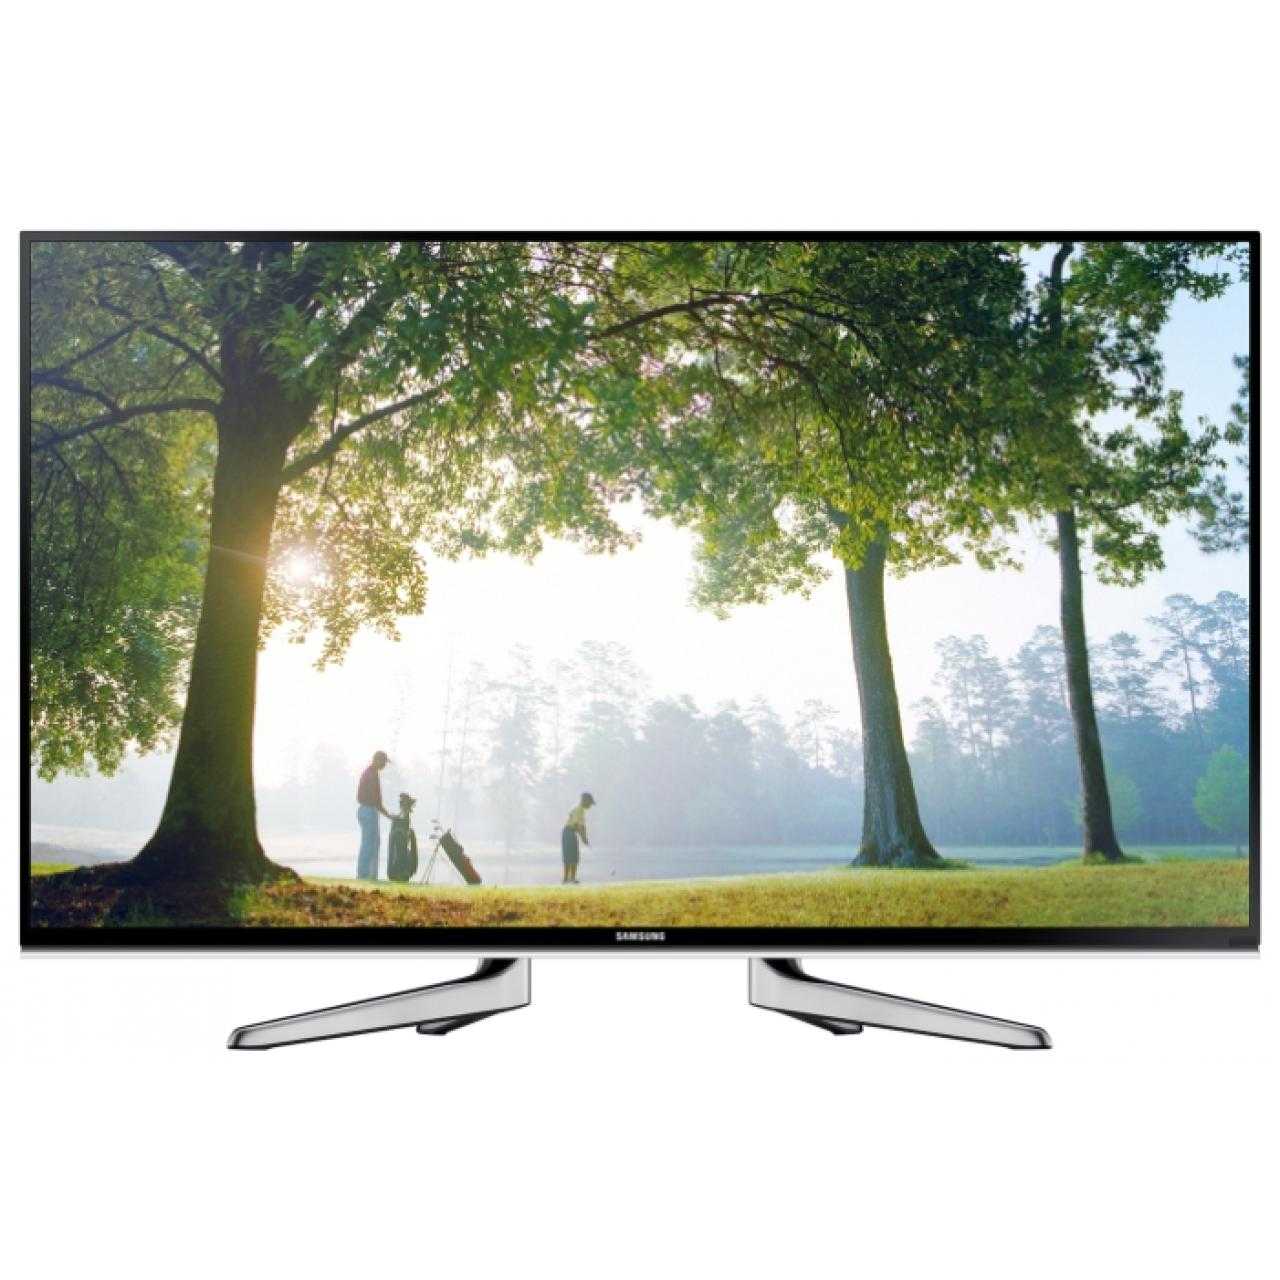 Телевизор Samsung UE40H6200 - подробные характеристики обзоры видео фото Цены в интернет-магазинах где можно купить телевизор Samsung UE40H6200